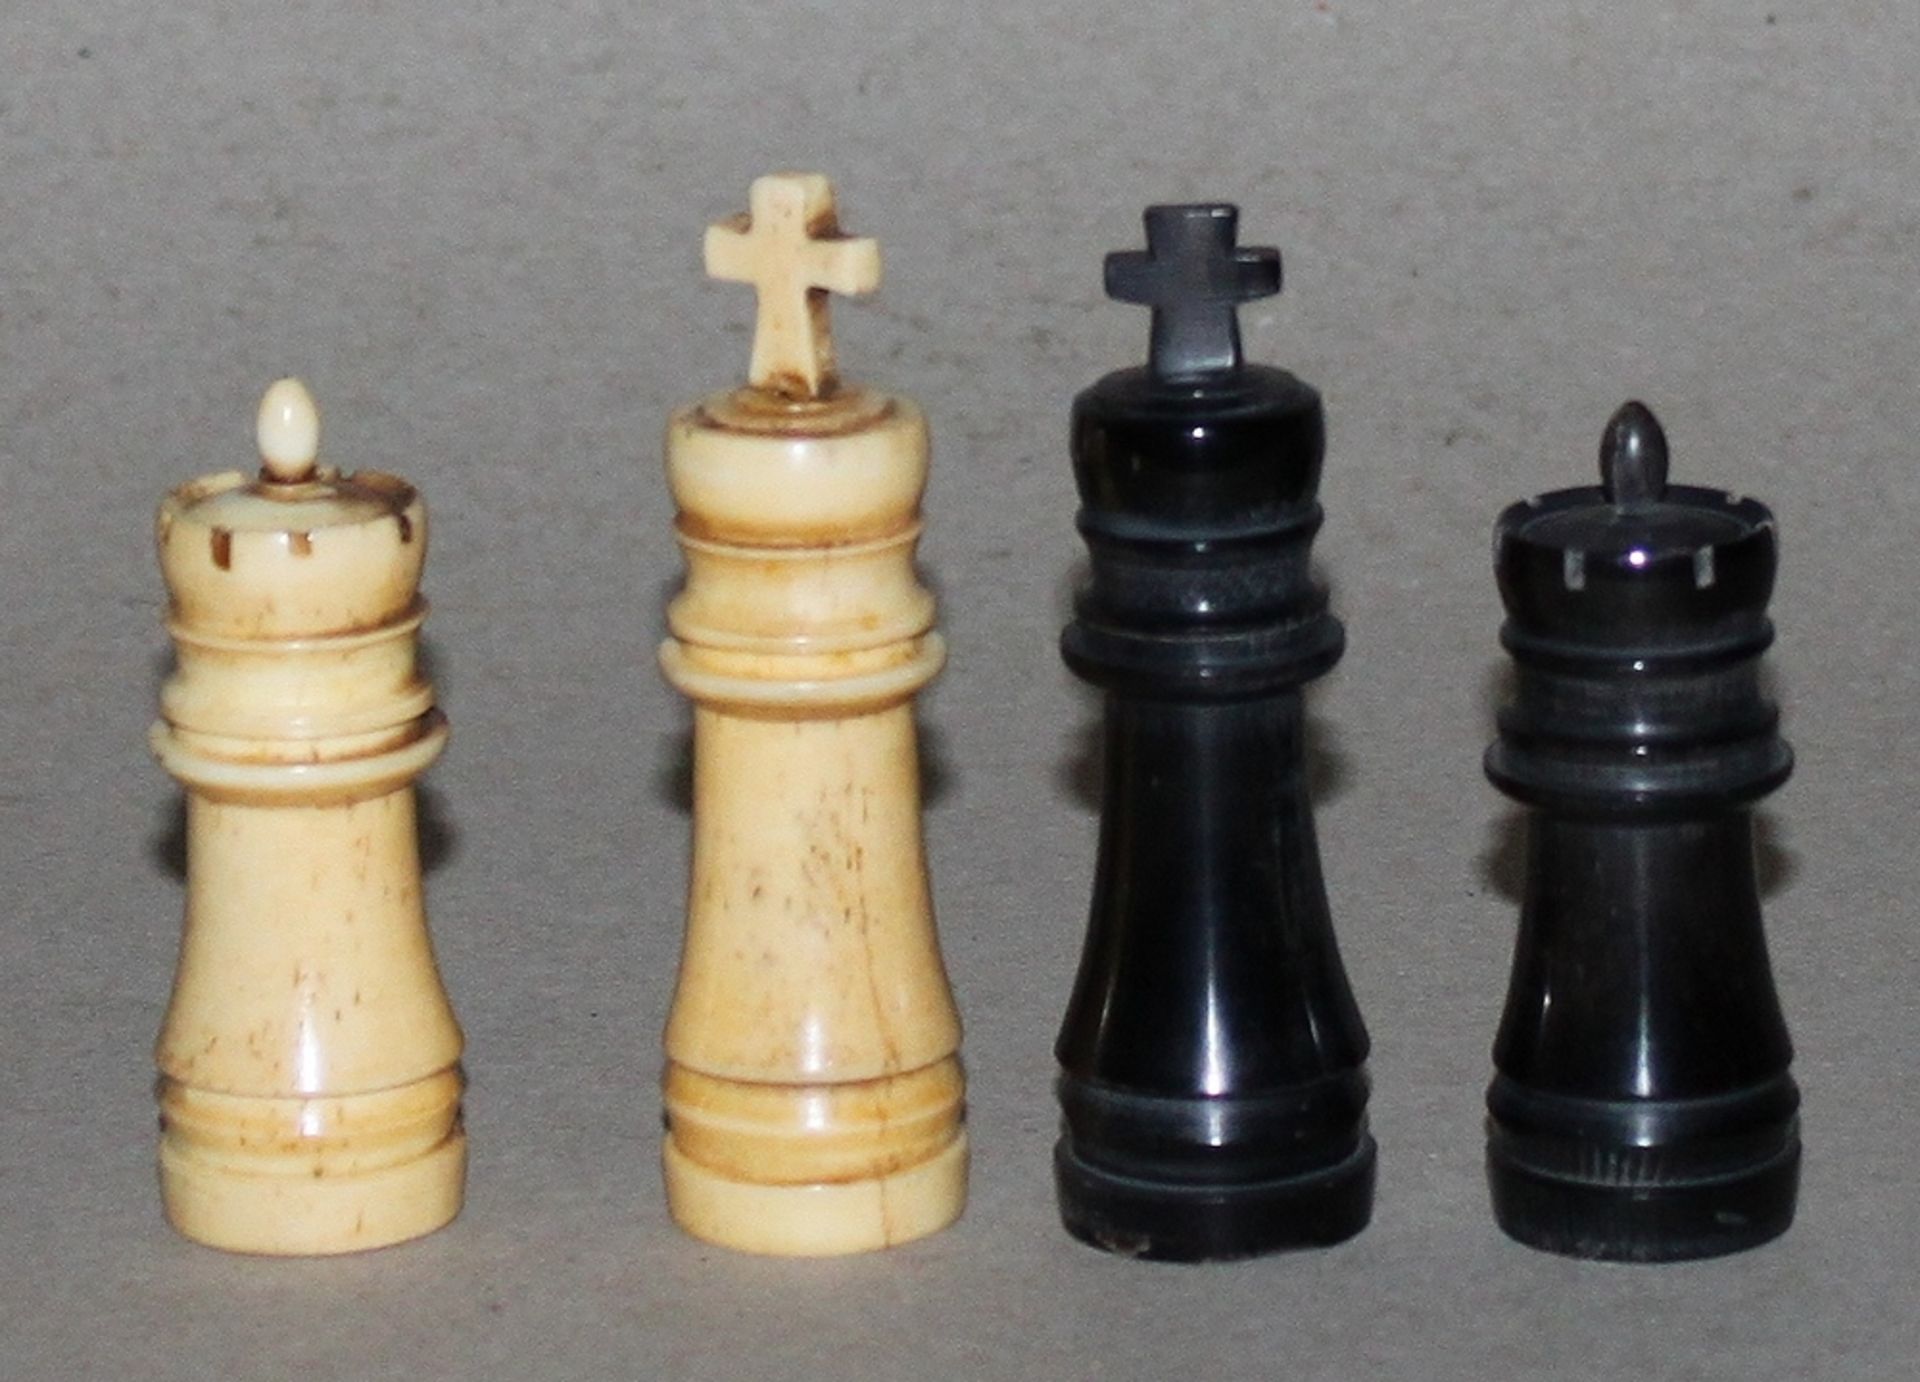 Europa. Schachfiguren aus Horn. Die eine Partei in schwarz (dunkel), die andere naturfarben.